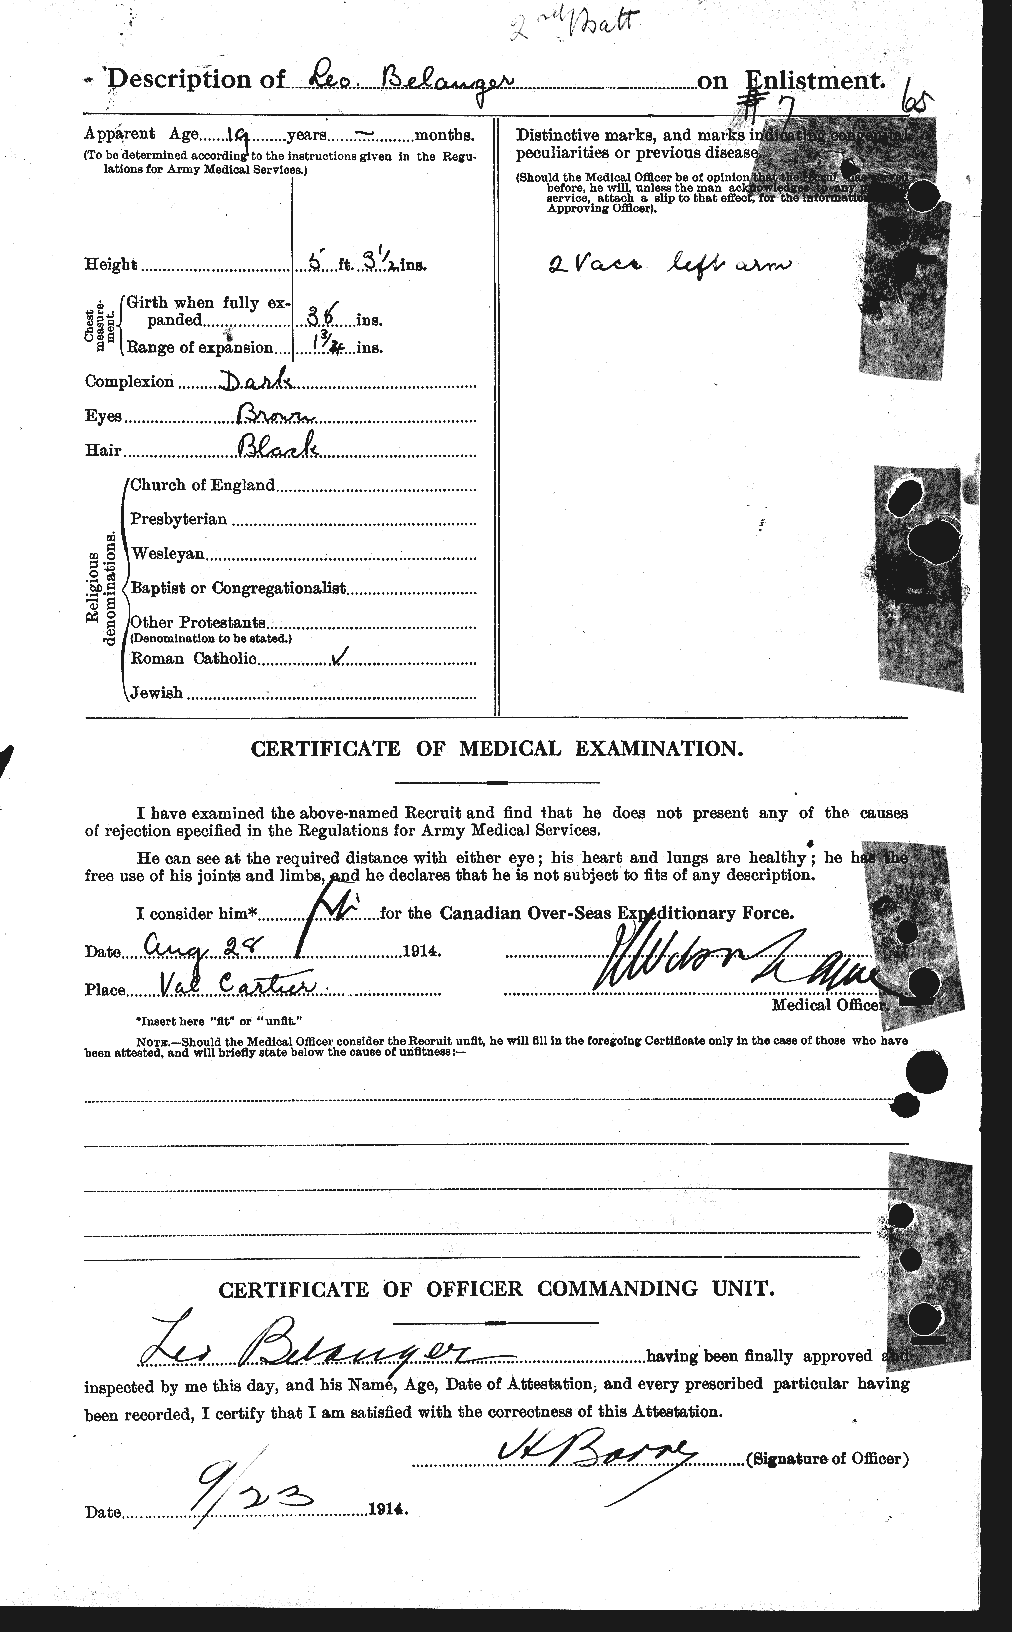 Dossiers du Personnel de la Première Guerre mondiale - CEC 232701b